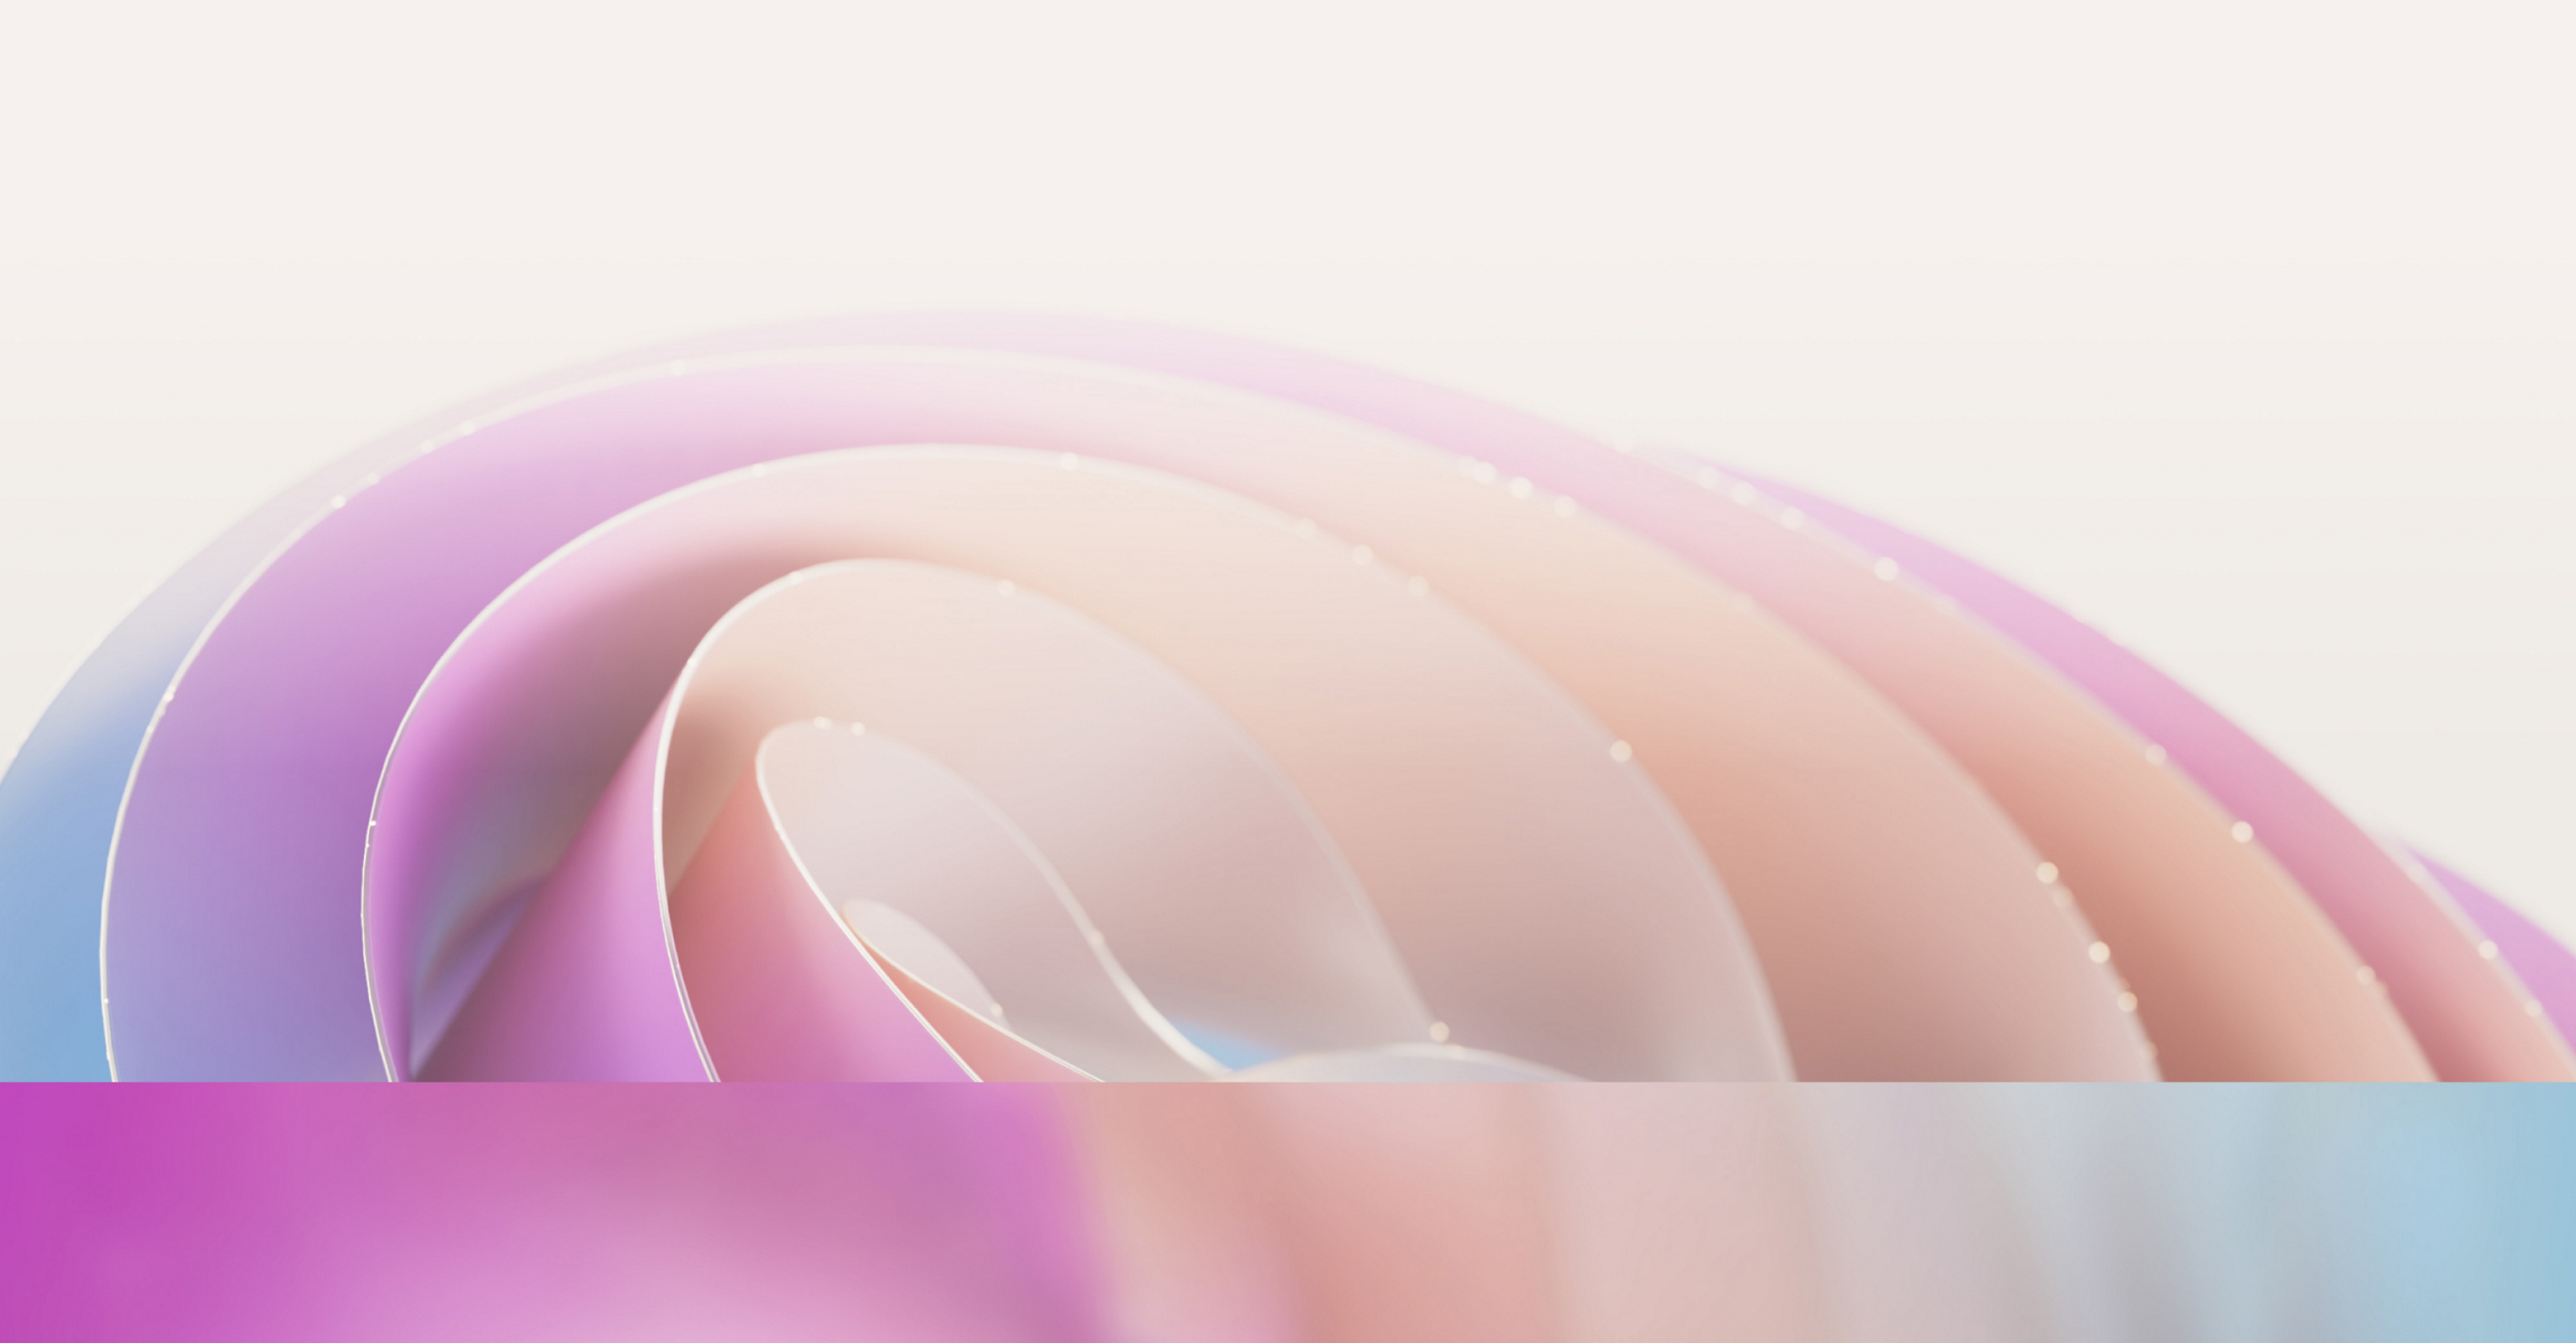 Abstraktní obrázek s hladkými, plynulými křivkami v jemných růžových a fialových odstínech s jemným efektem rozptylu světla